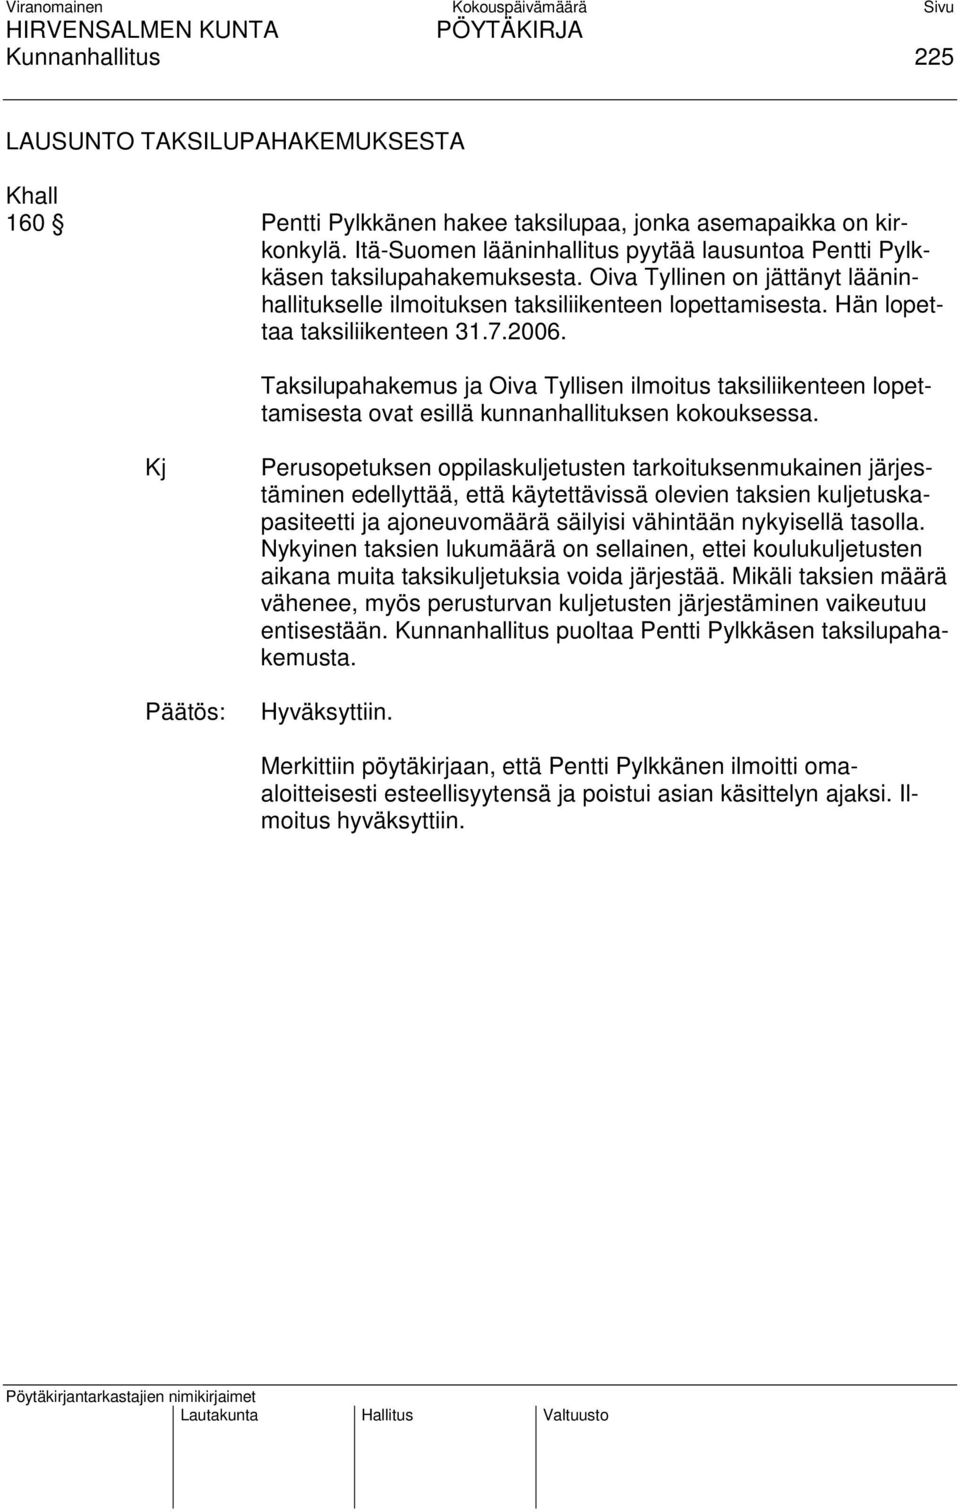 Hän lopettaa taksiliikenteen 31.7.2006. Taksilupahakemus ja Oiva Tyllisen ilmoitus taksiliikenteen lopettamisesta ovat esillä kunnanhallituksen kokouksessa.